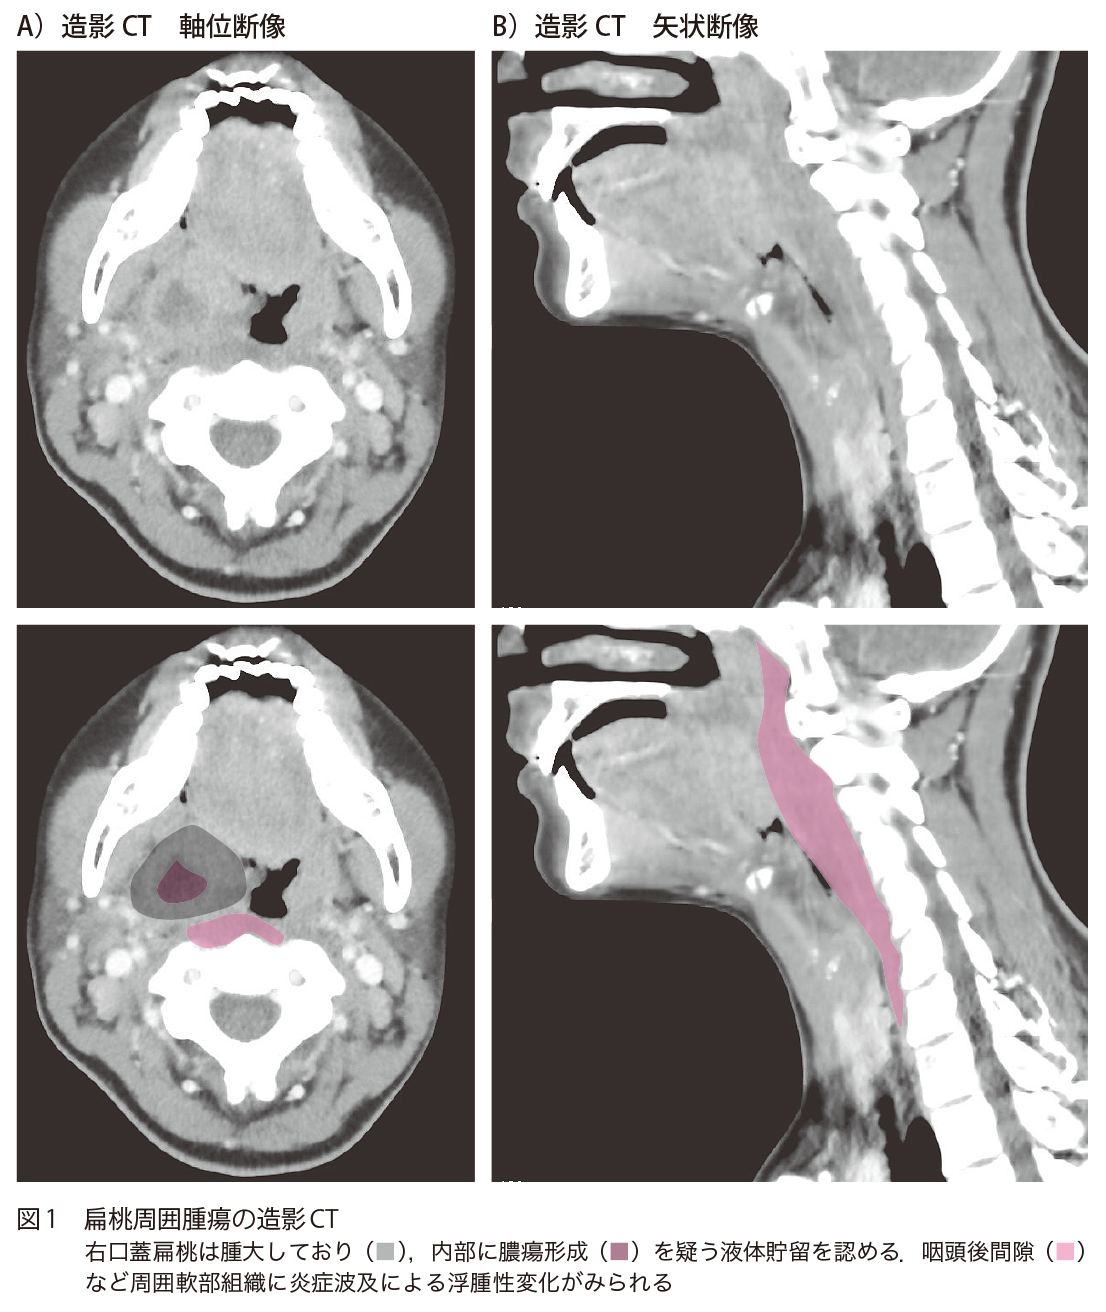 図1 扁桃周囲腫瘍の造影CT